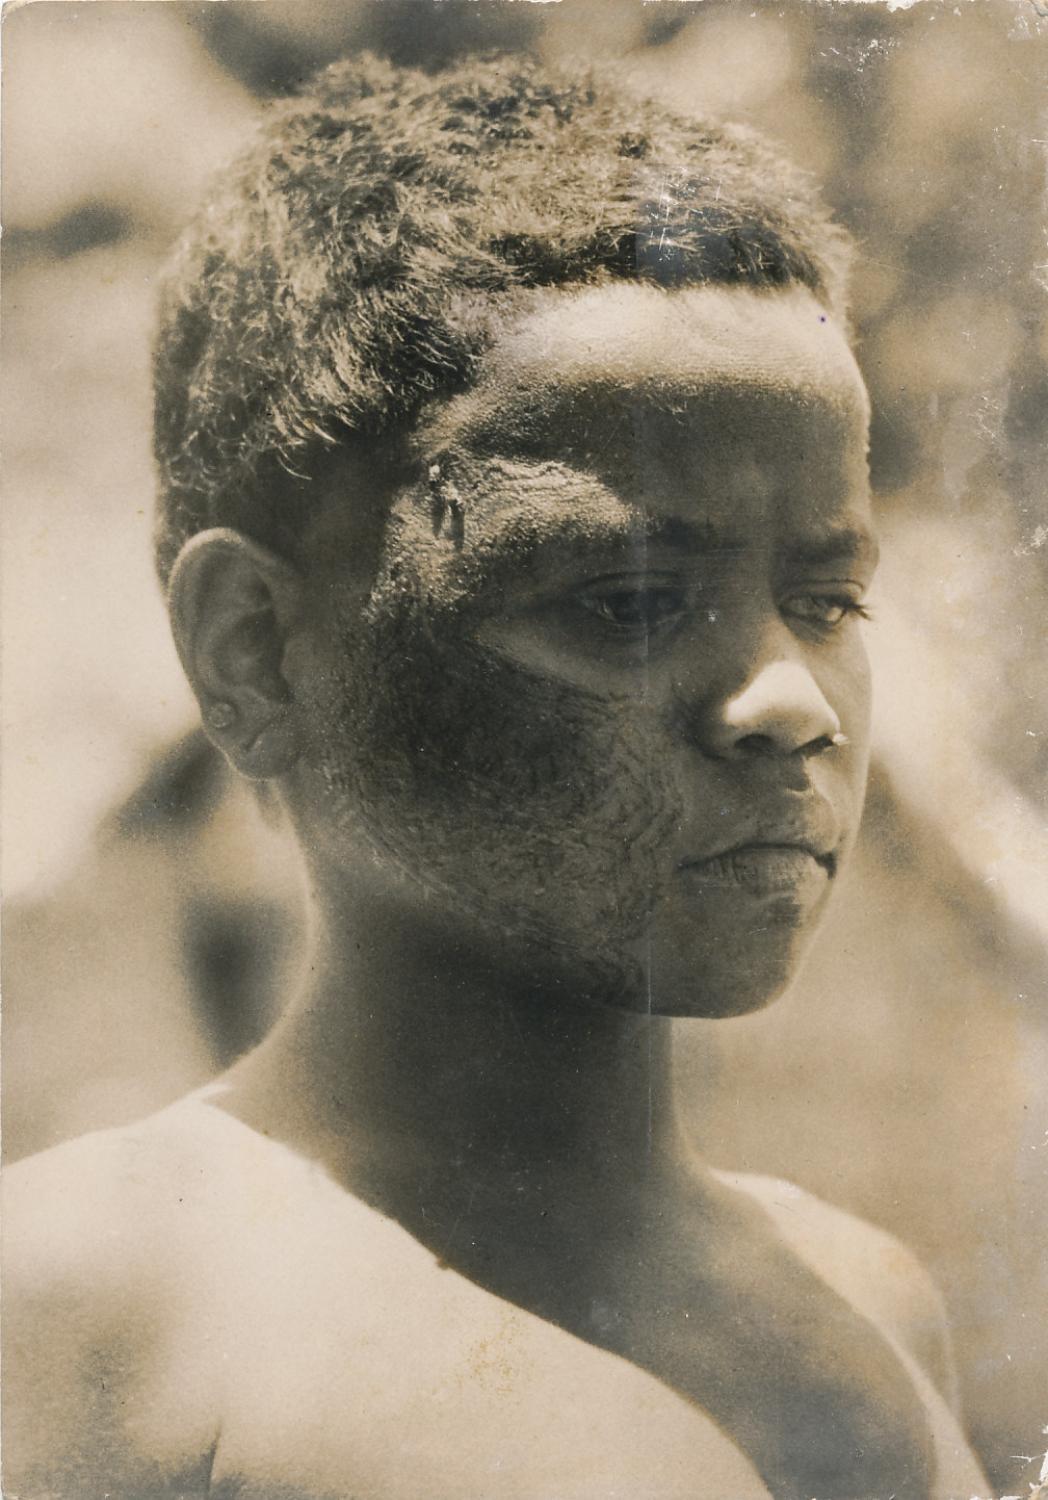 Boy showing Tattoo Face Solomon Islands